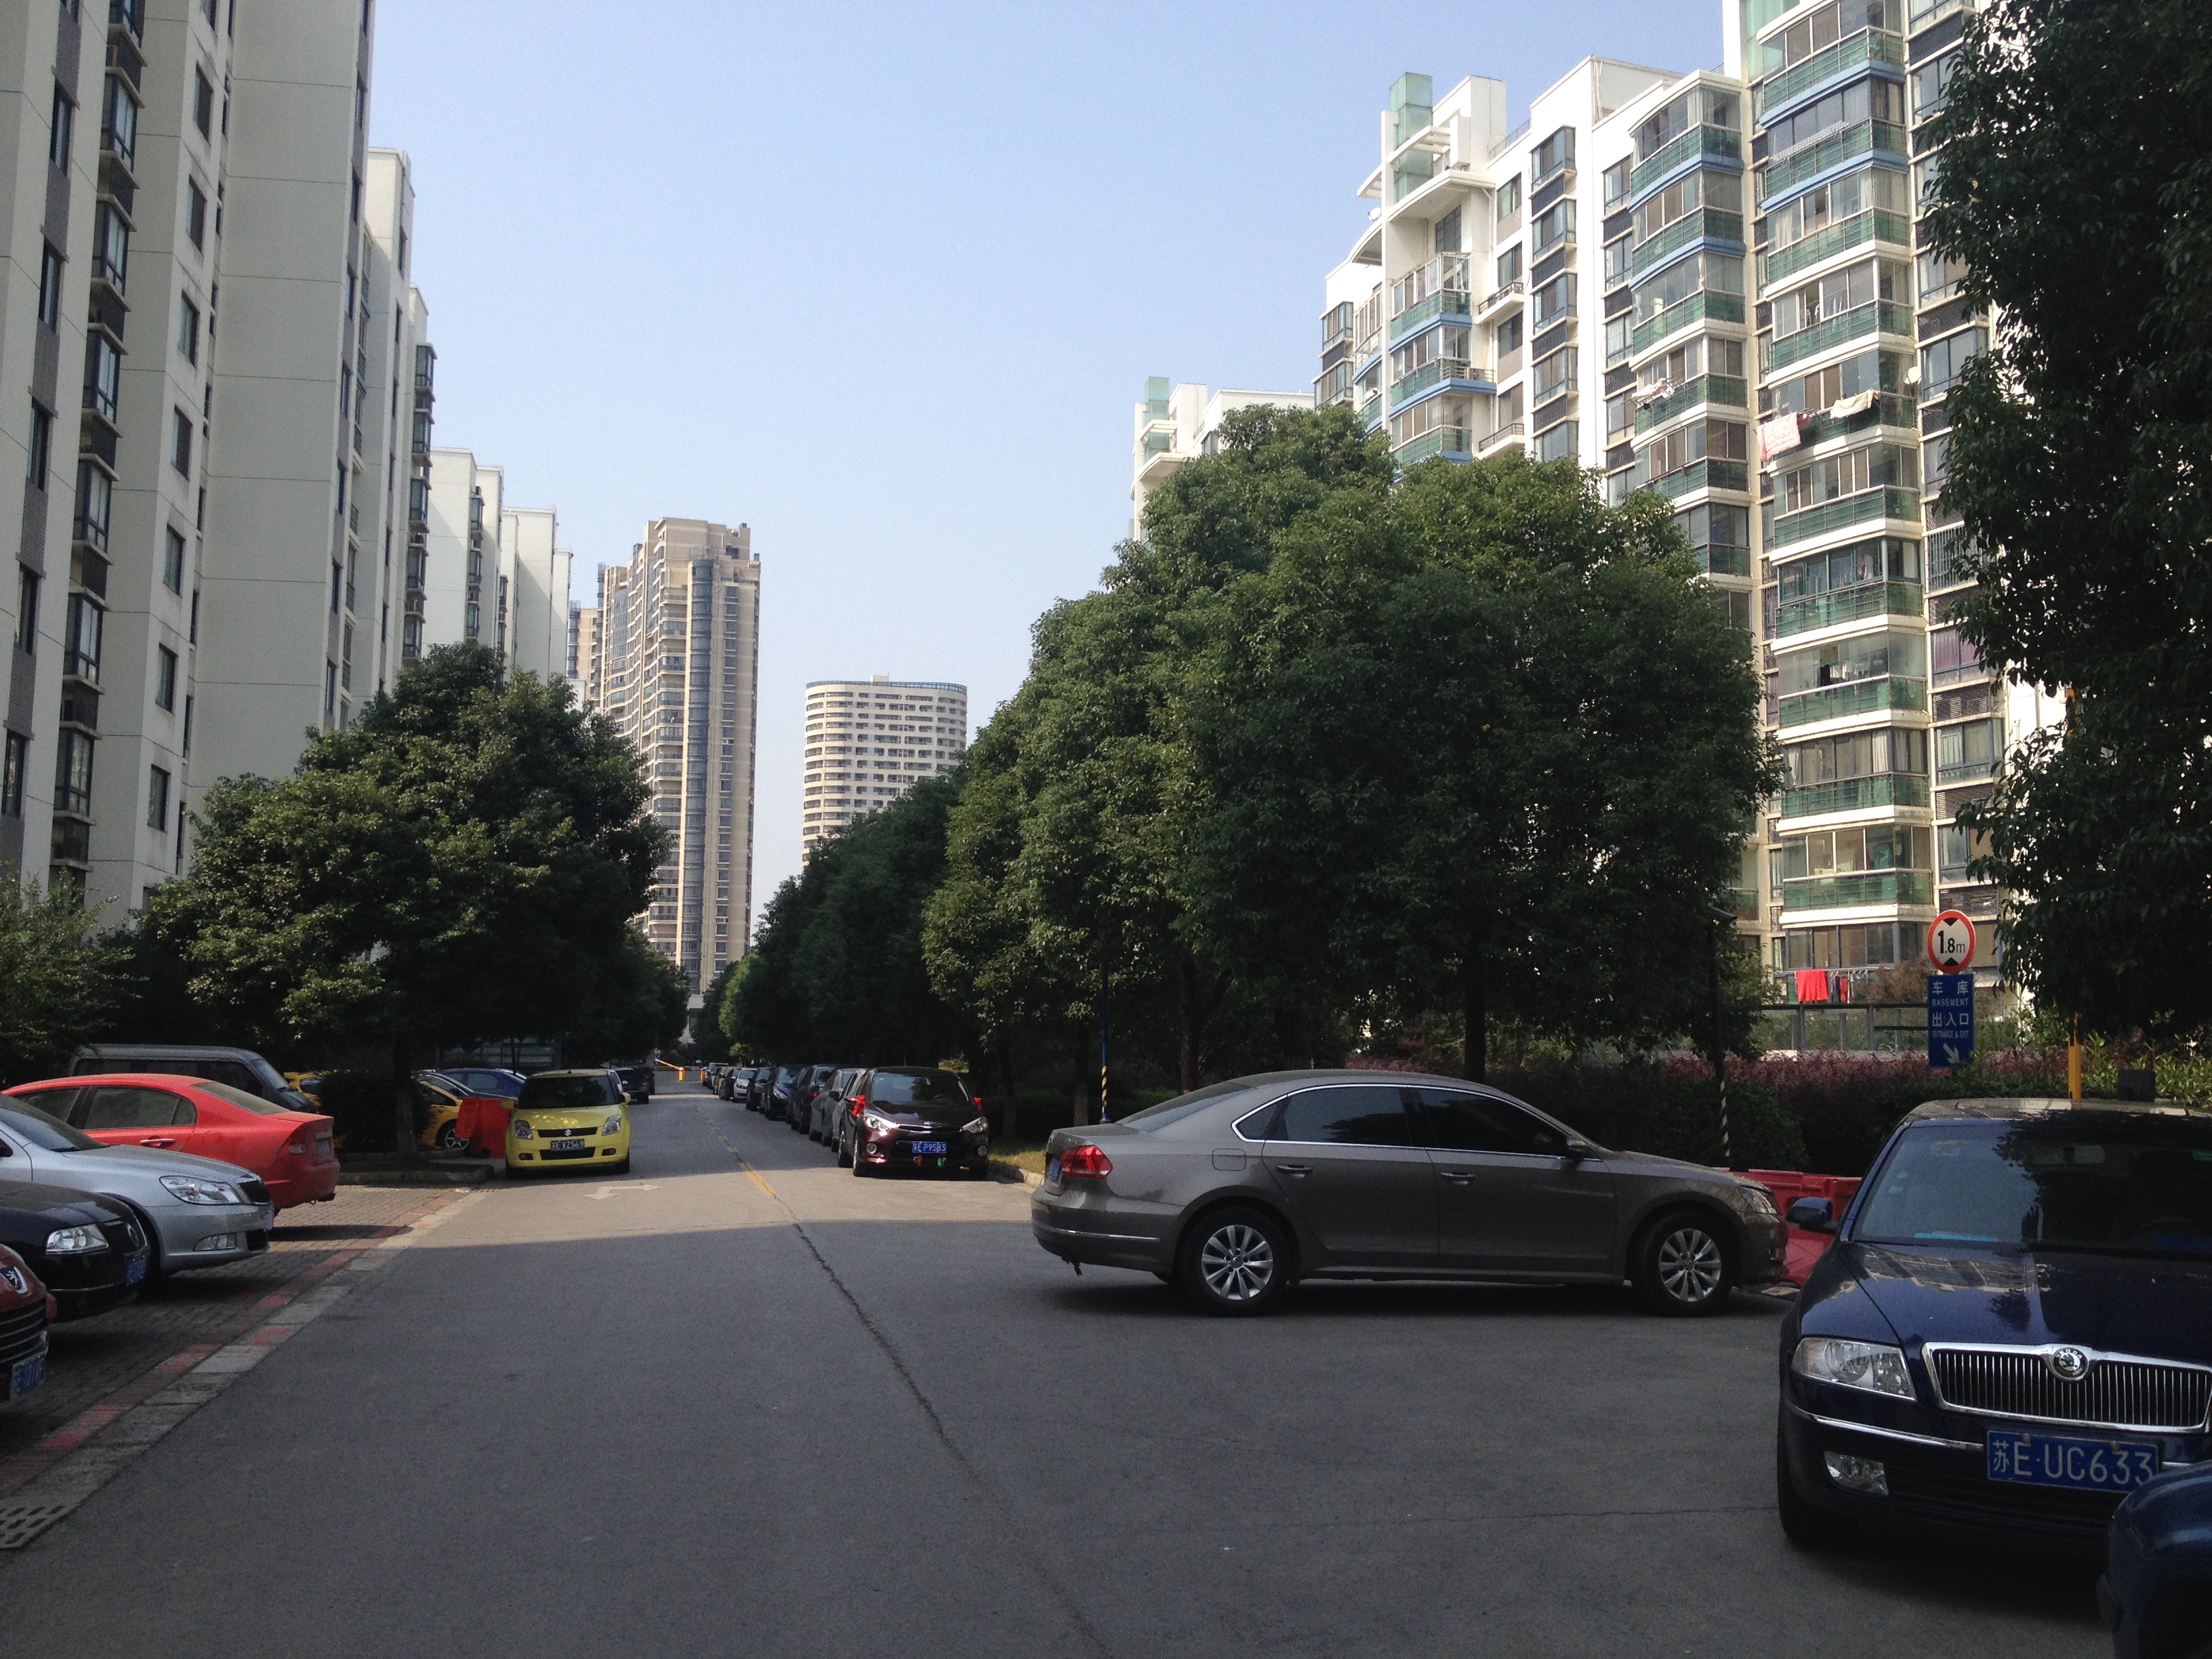 上海城 2室2厅1卫 93平方米 155万出售